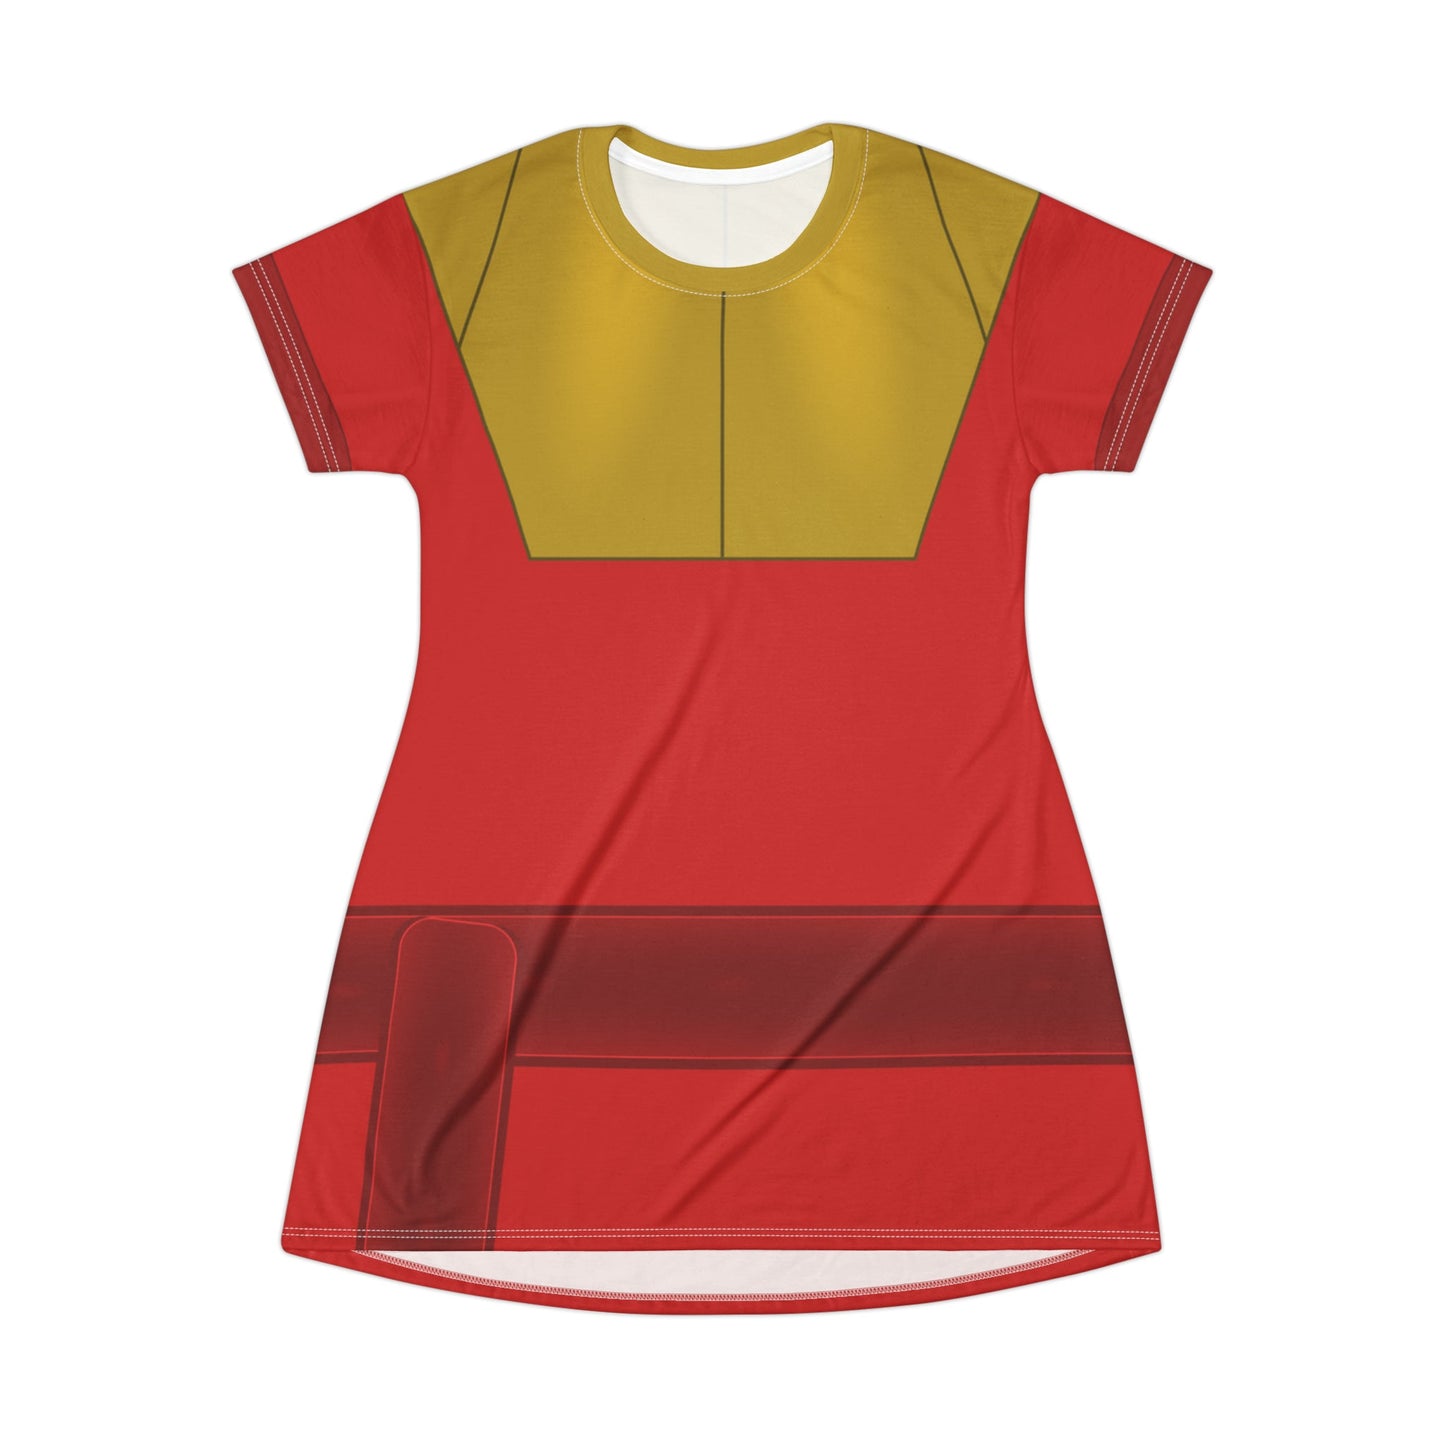 The Kuzco T-Shirt Dress- Cosplay, Bounding adult disneyAll Over PrintAOP#tag4##tag5##tag6#